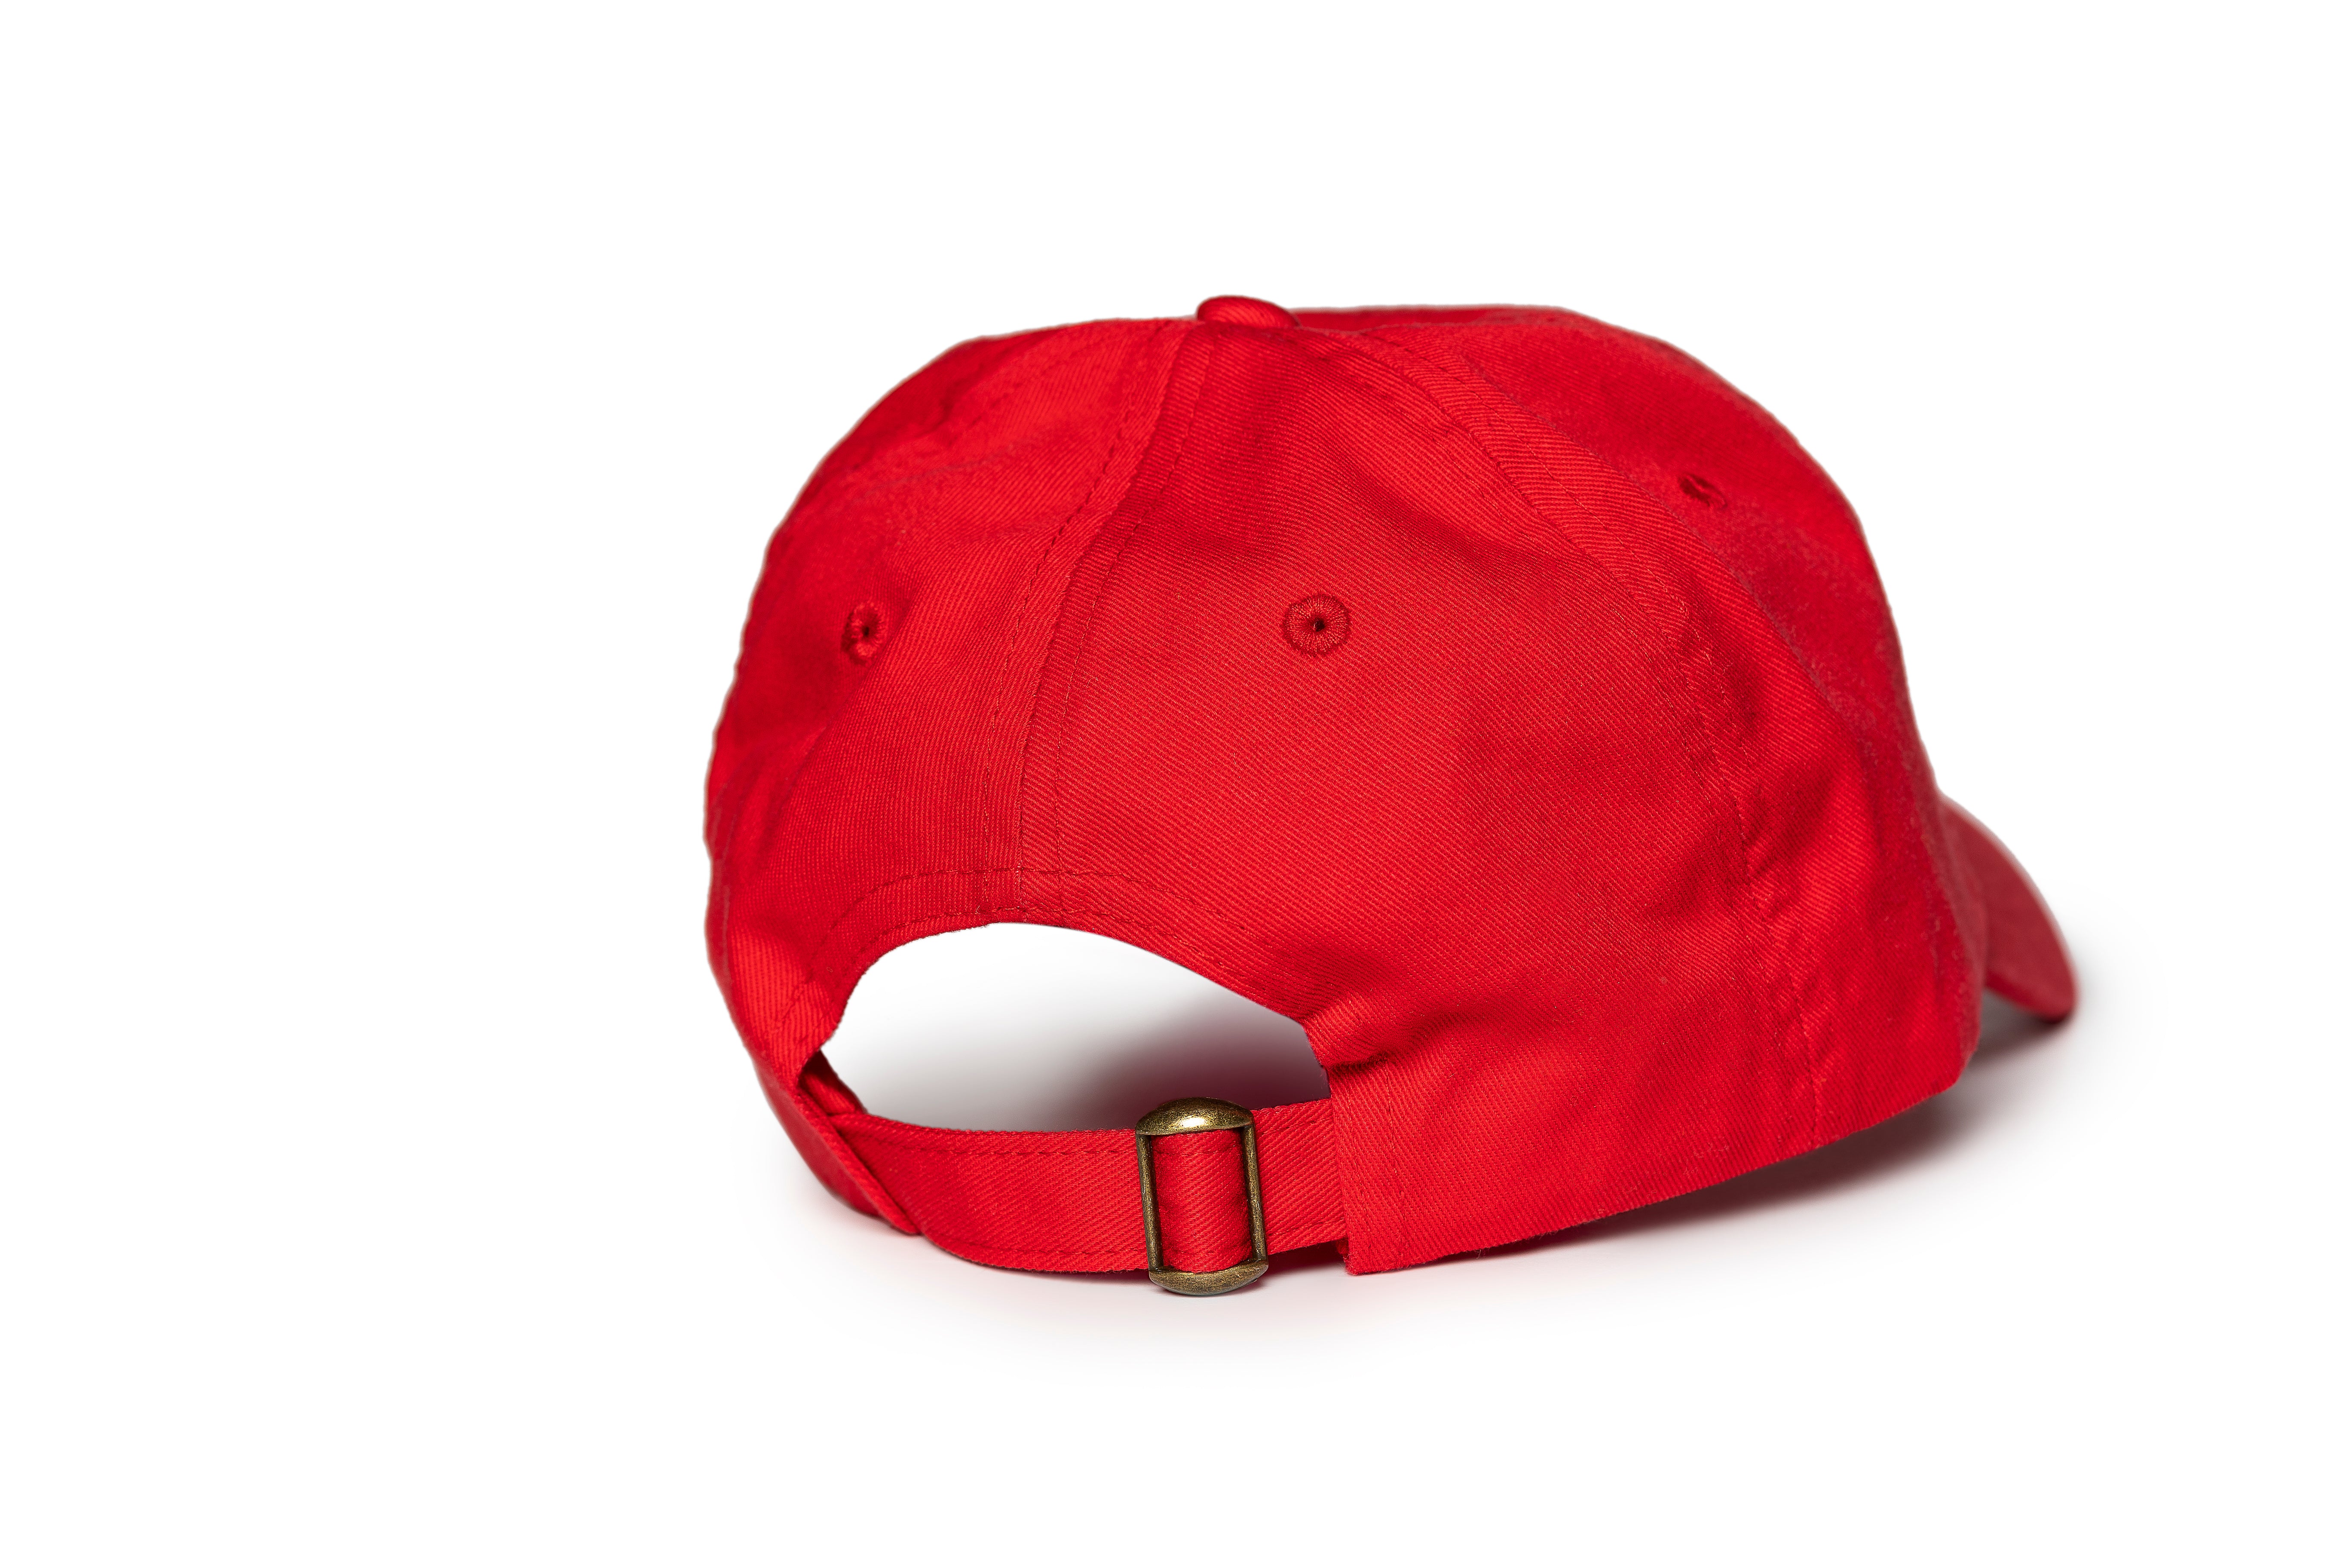 PROUD HBCU GRAD RED HAT